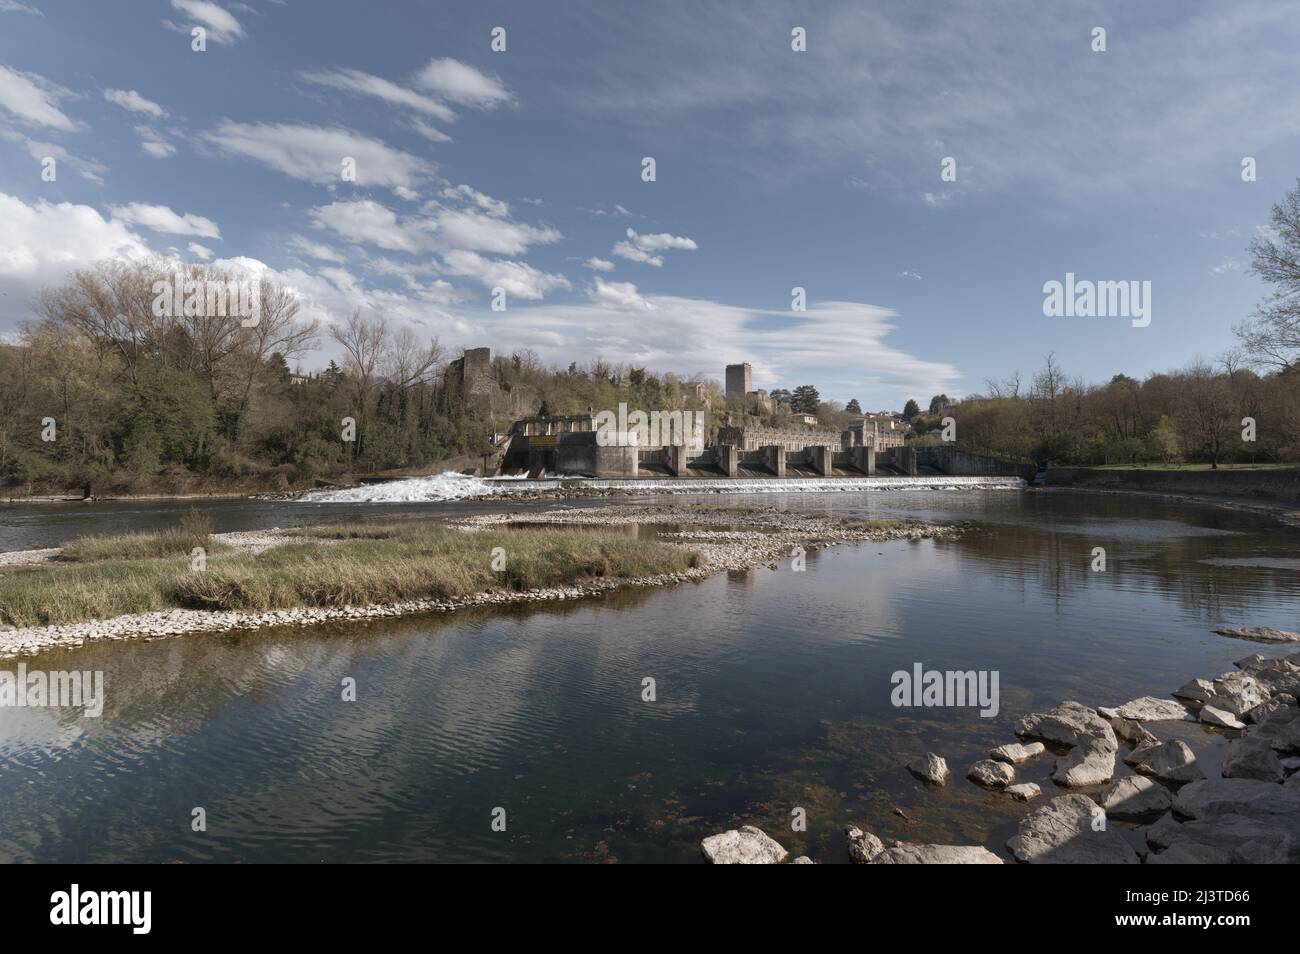 Centrale hydroélectrique historique de Taccani sur la rivière Adda Lombardie Italie Banque D'Images